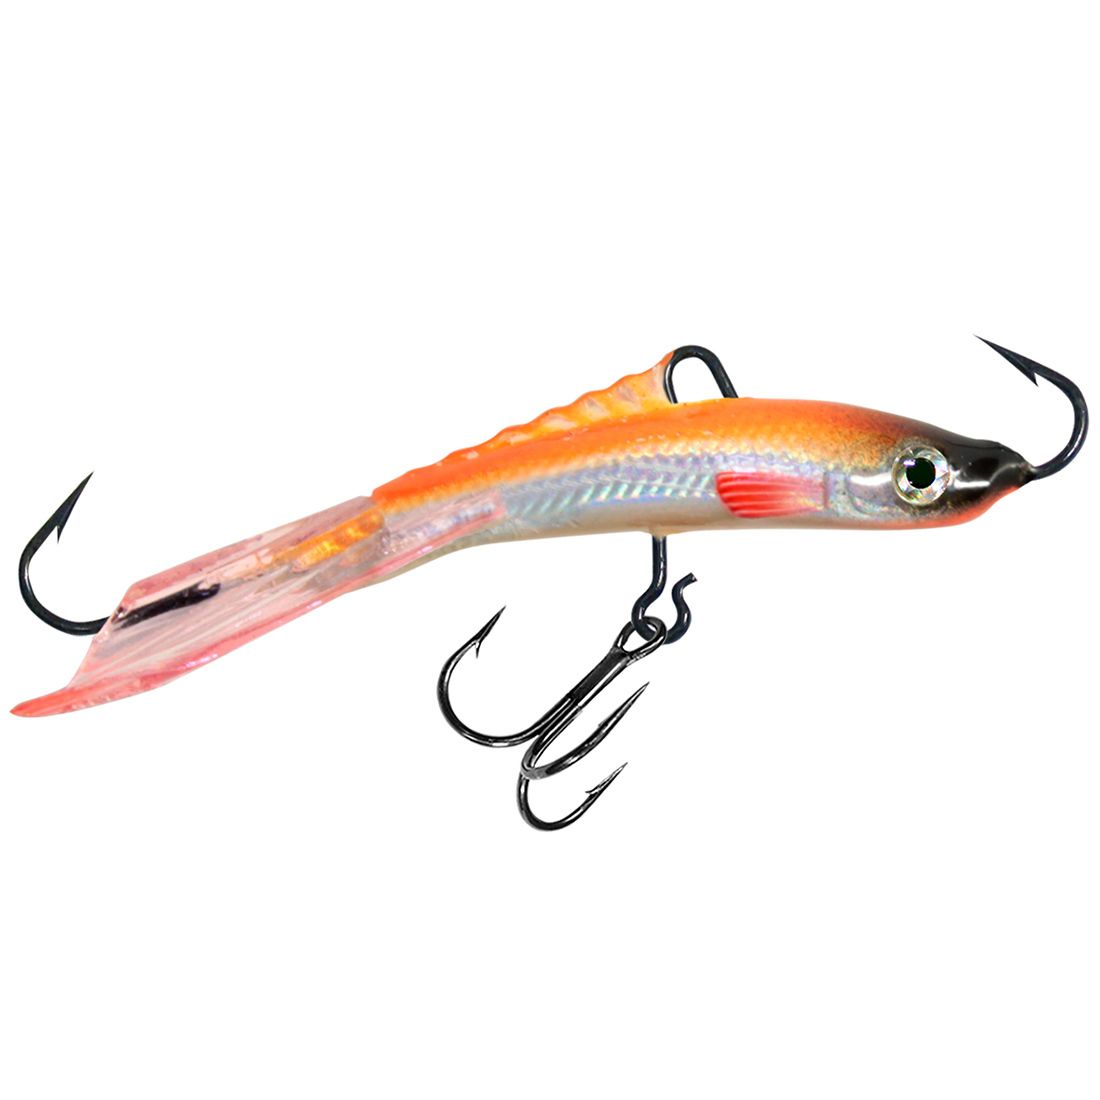 фото Балансир для рыбалки aqua чудо-7 74mm цвет 102 оранжевая спинка, 1 штука